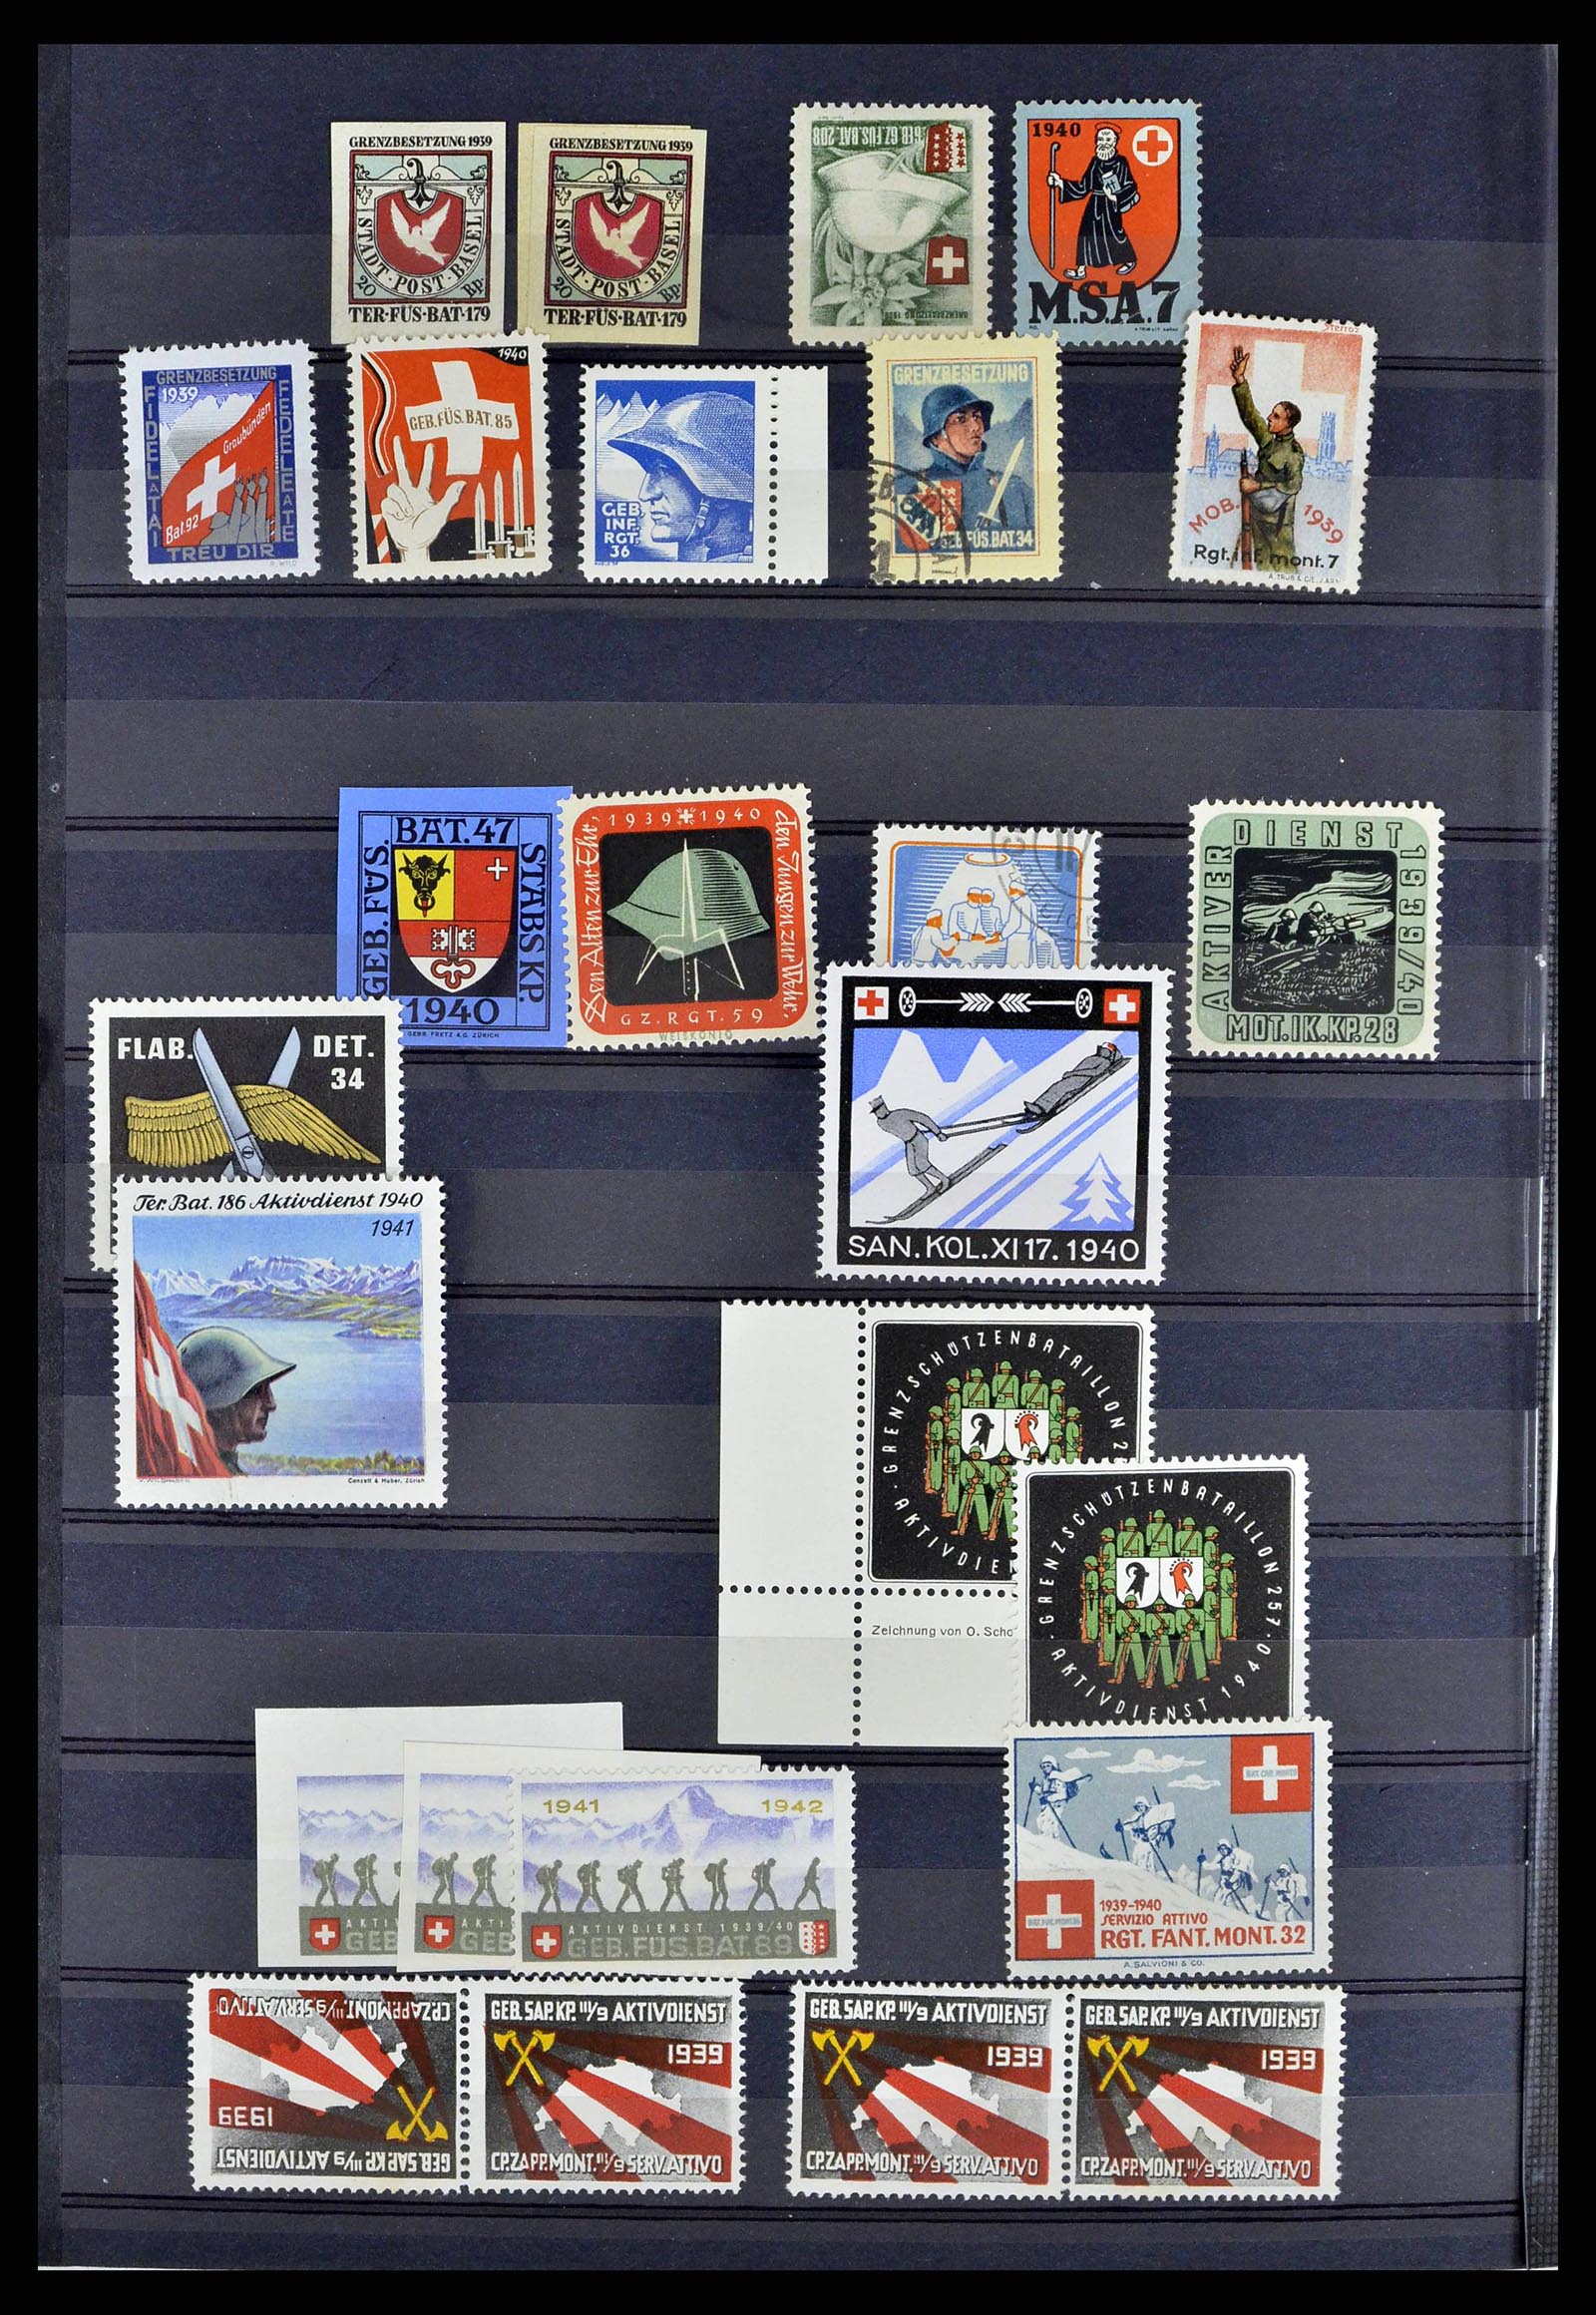 38768 0021 - Stamp collection 38768 Switzerland soldierstamps 1914-1945.